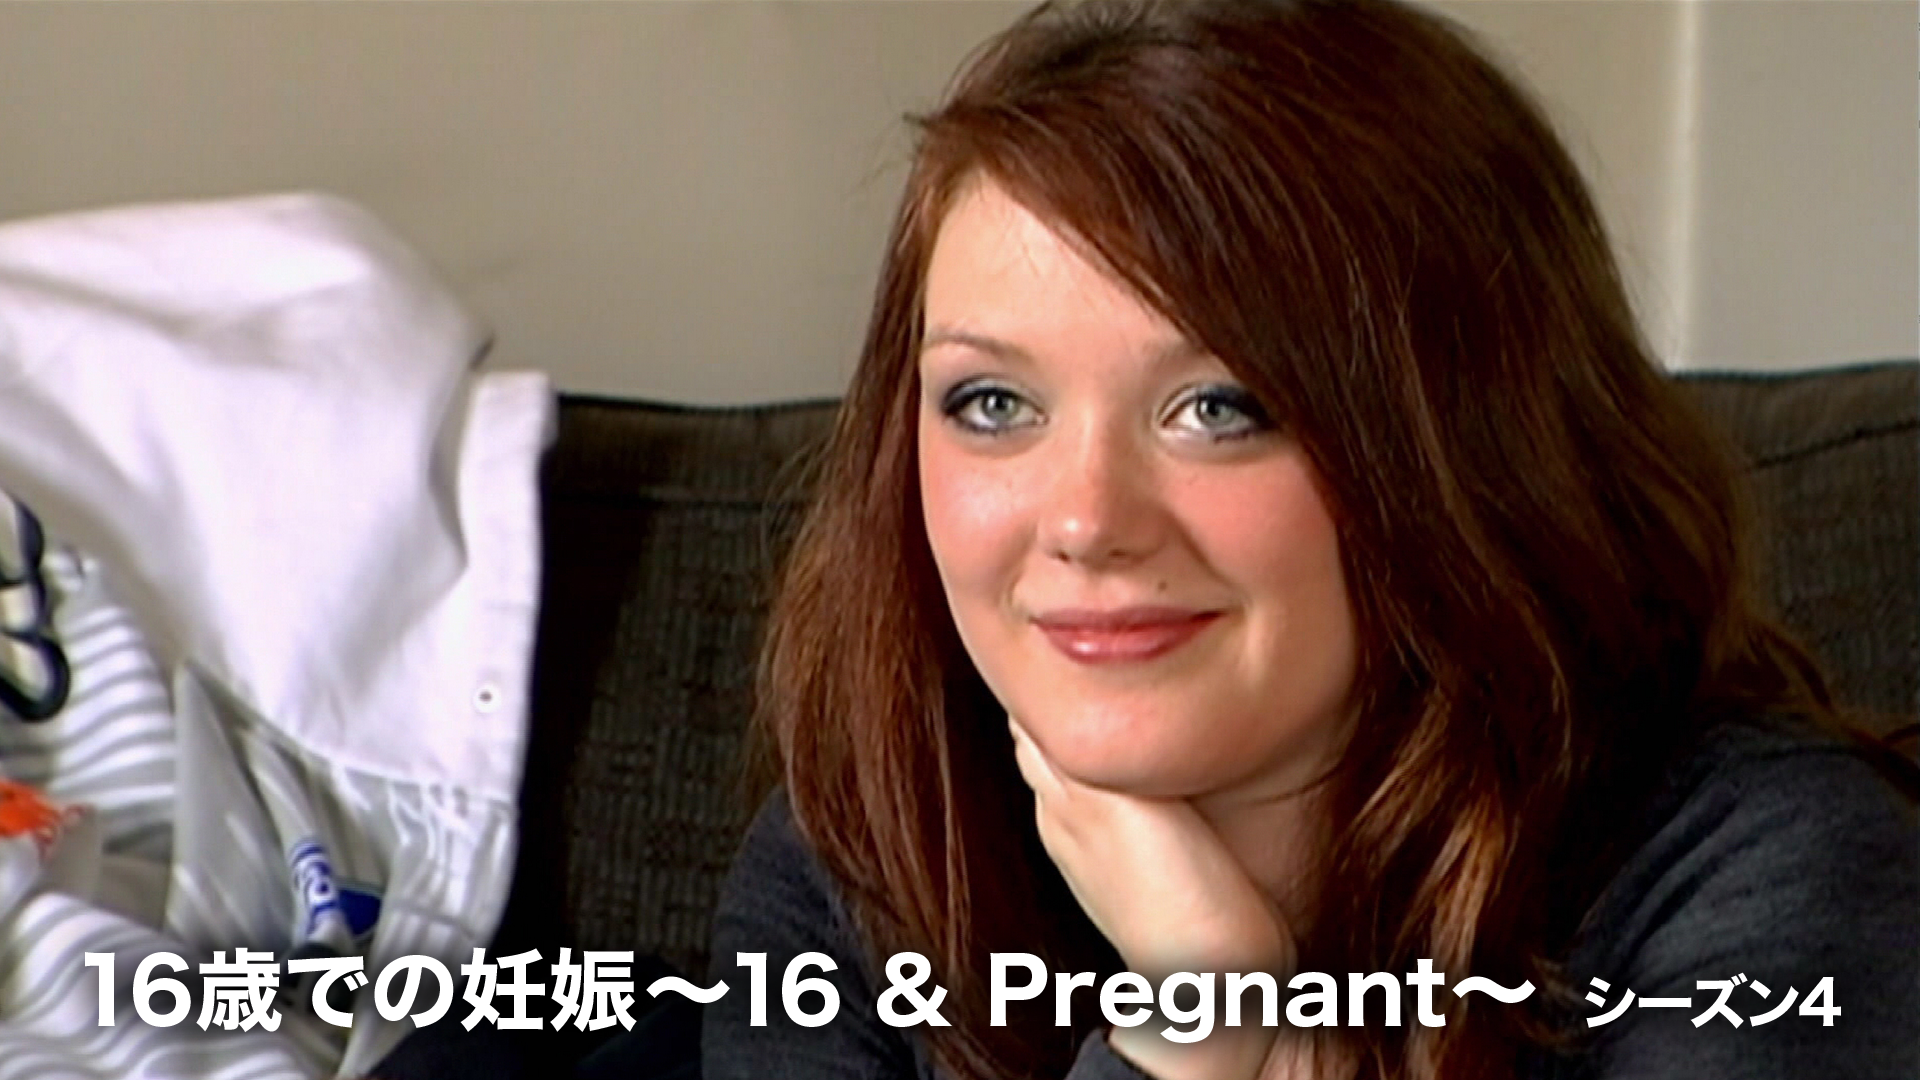 16歳での妊娠 ～16 & Pregnant～ シーズン4の動画 - 16歳での妊娠 ～16 & Pregnant～ シーズン2